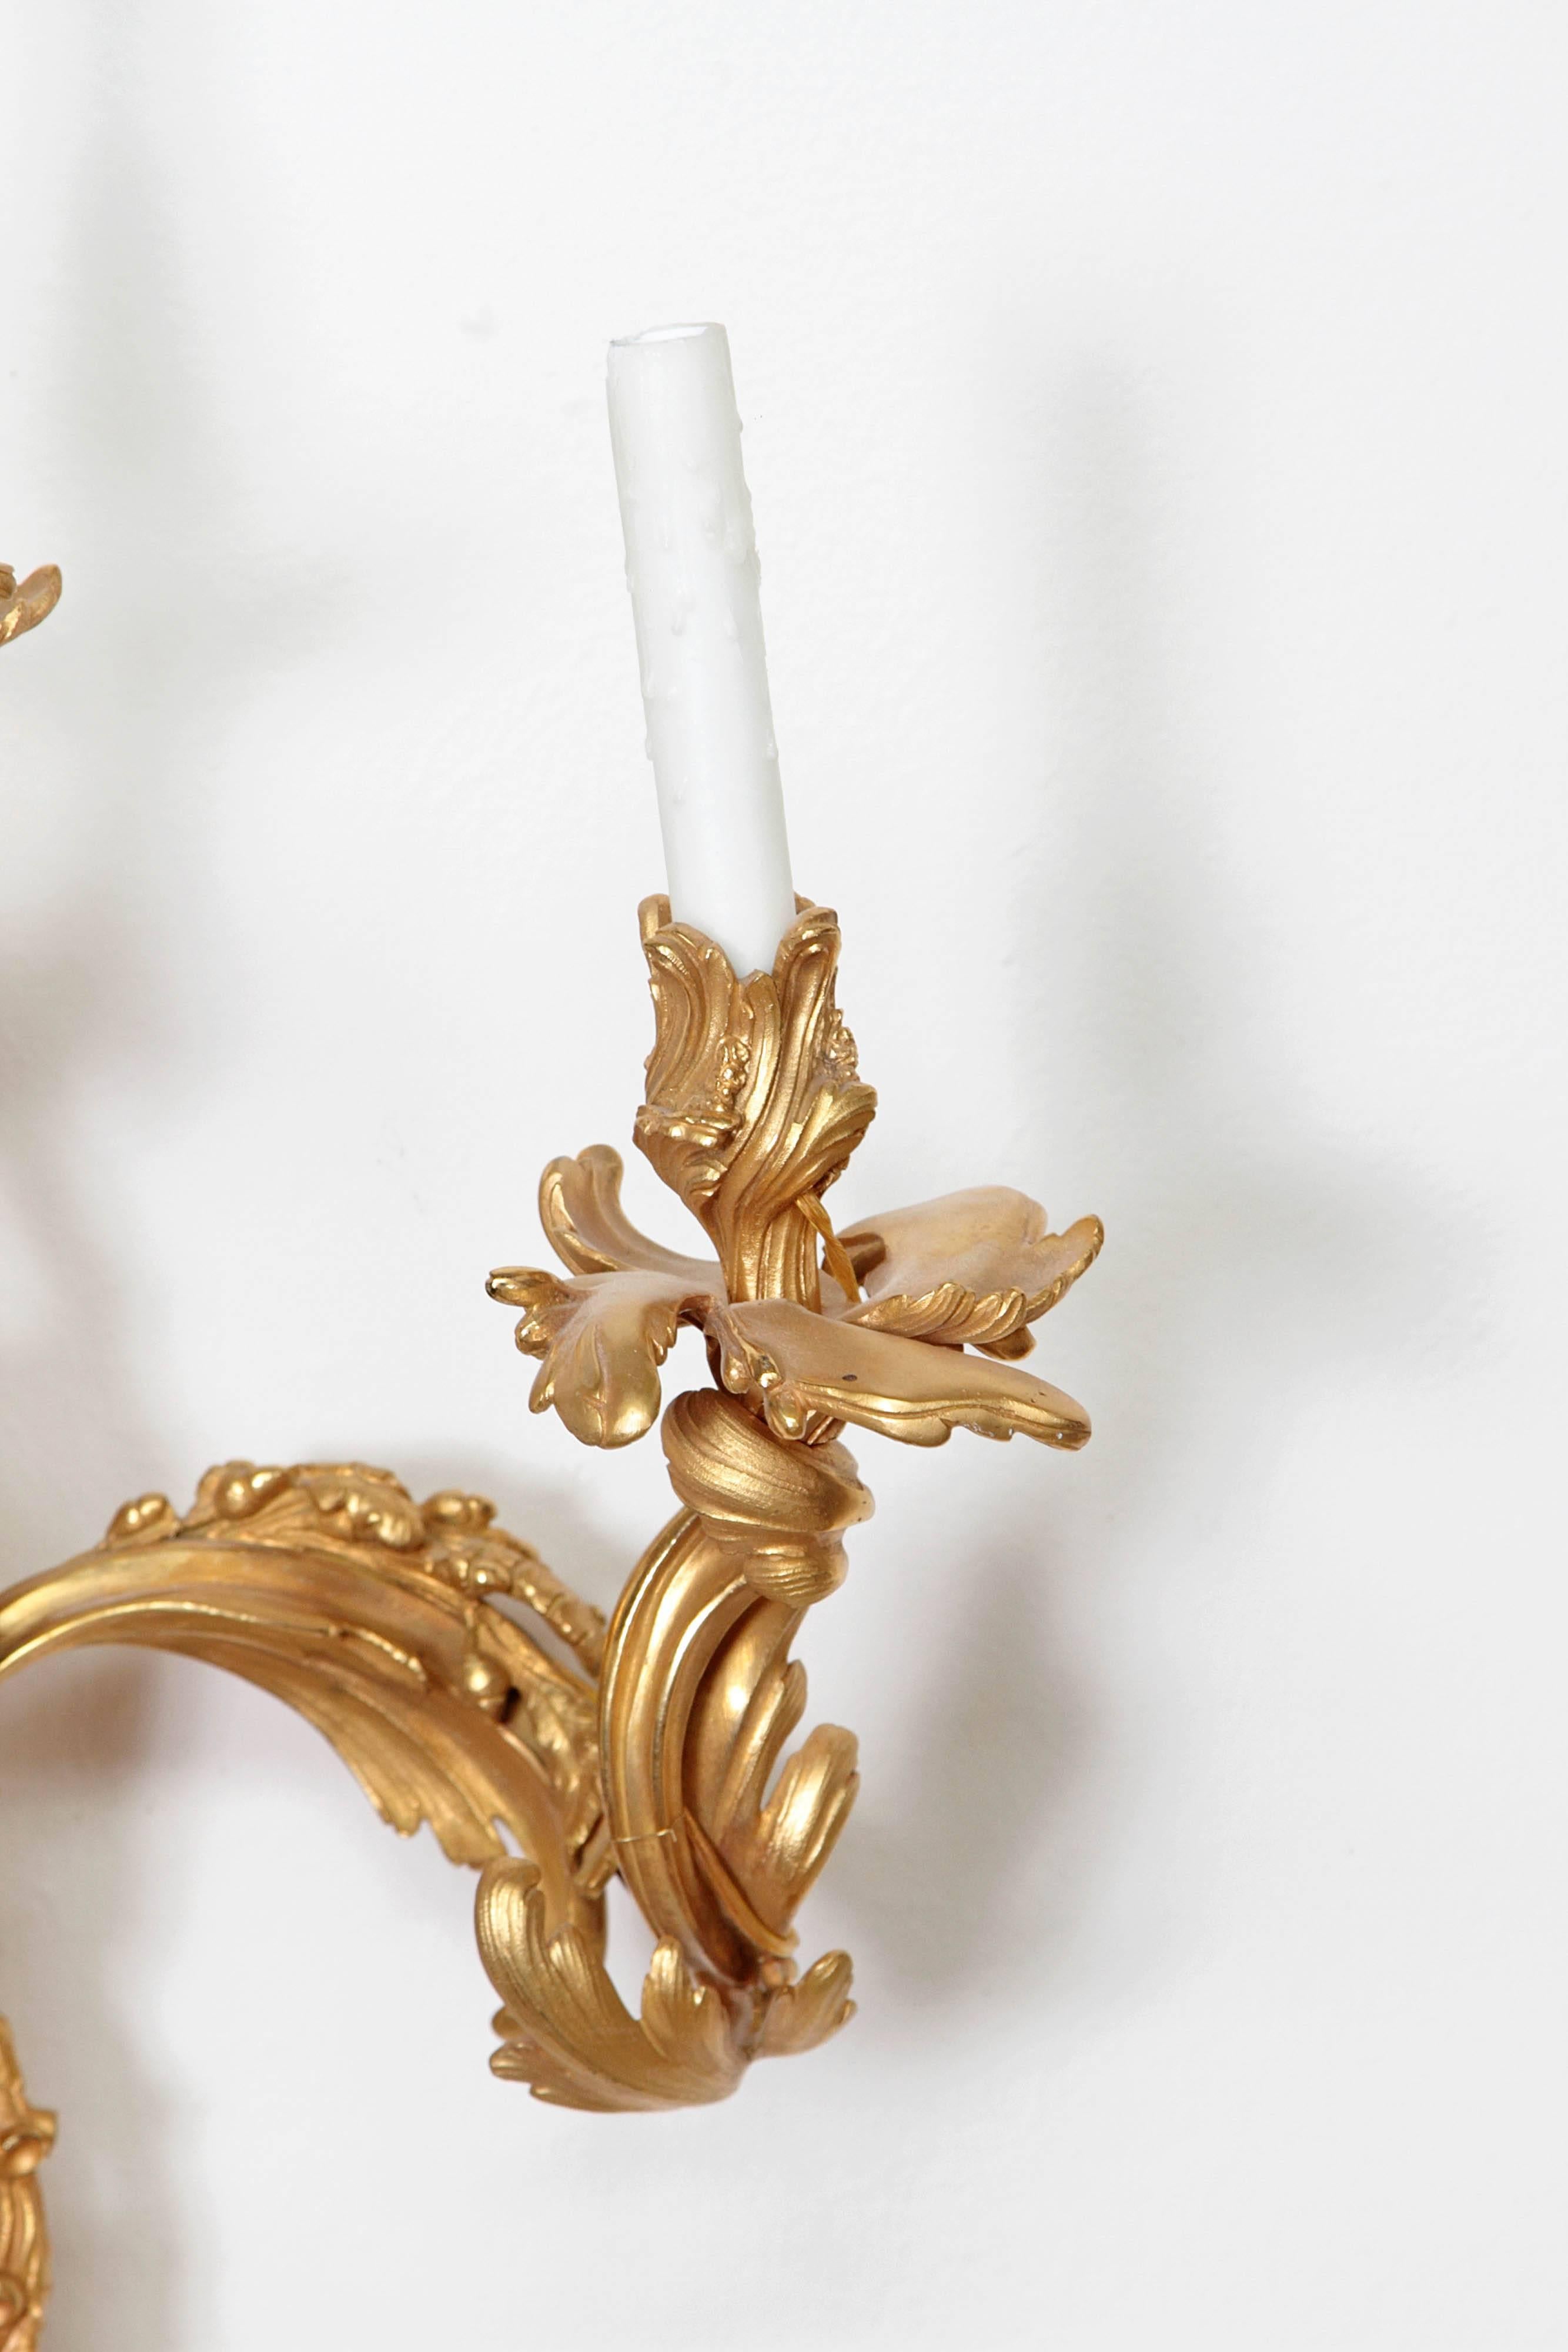 Ein Paar Bronzewandleuchter im Louis XV-Stil, quecksilbervergoldet, brüniert, blattförmig, dreiflammig mit einem Putto an der Basis jedes Wandleuchters. 19. Jahrhundert, um 1880, Frankreich.

30